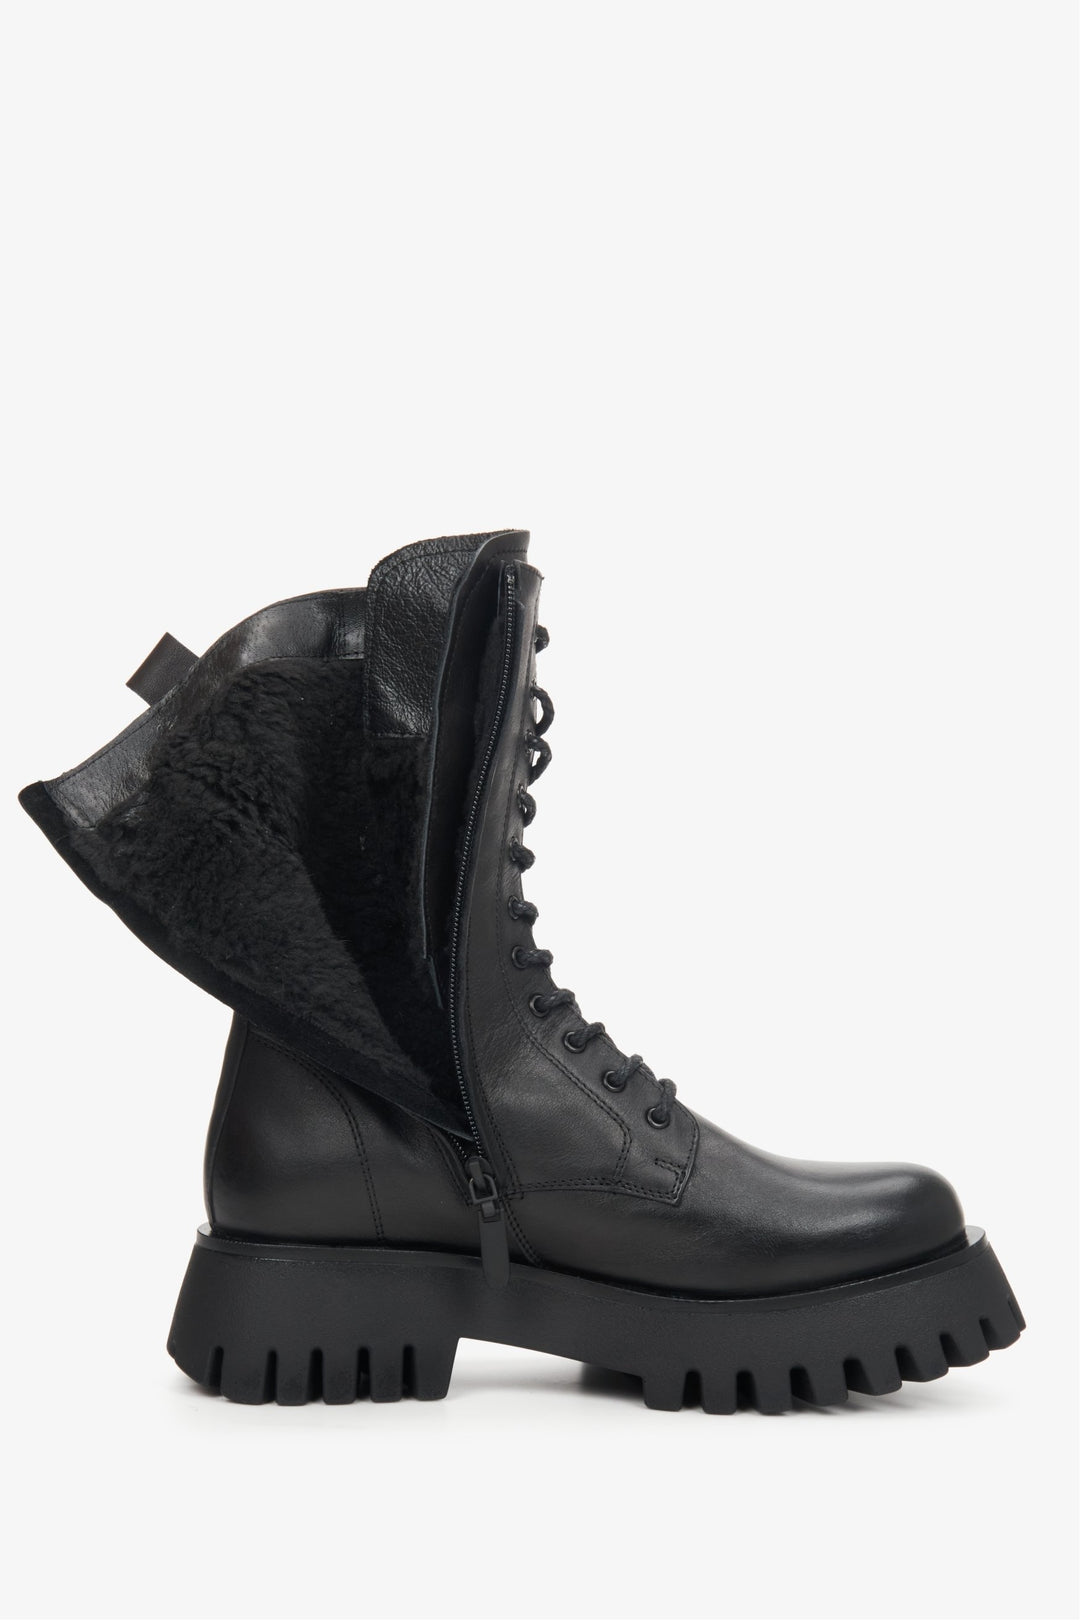 Wysokie botki sznurowane ze skóry naturalnej w kolorze czarnym marki Estro - zbliżenie na wypełnienie buta.